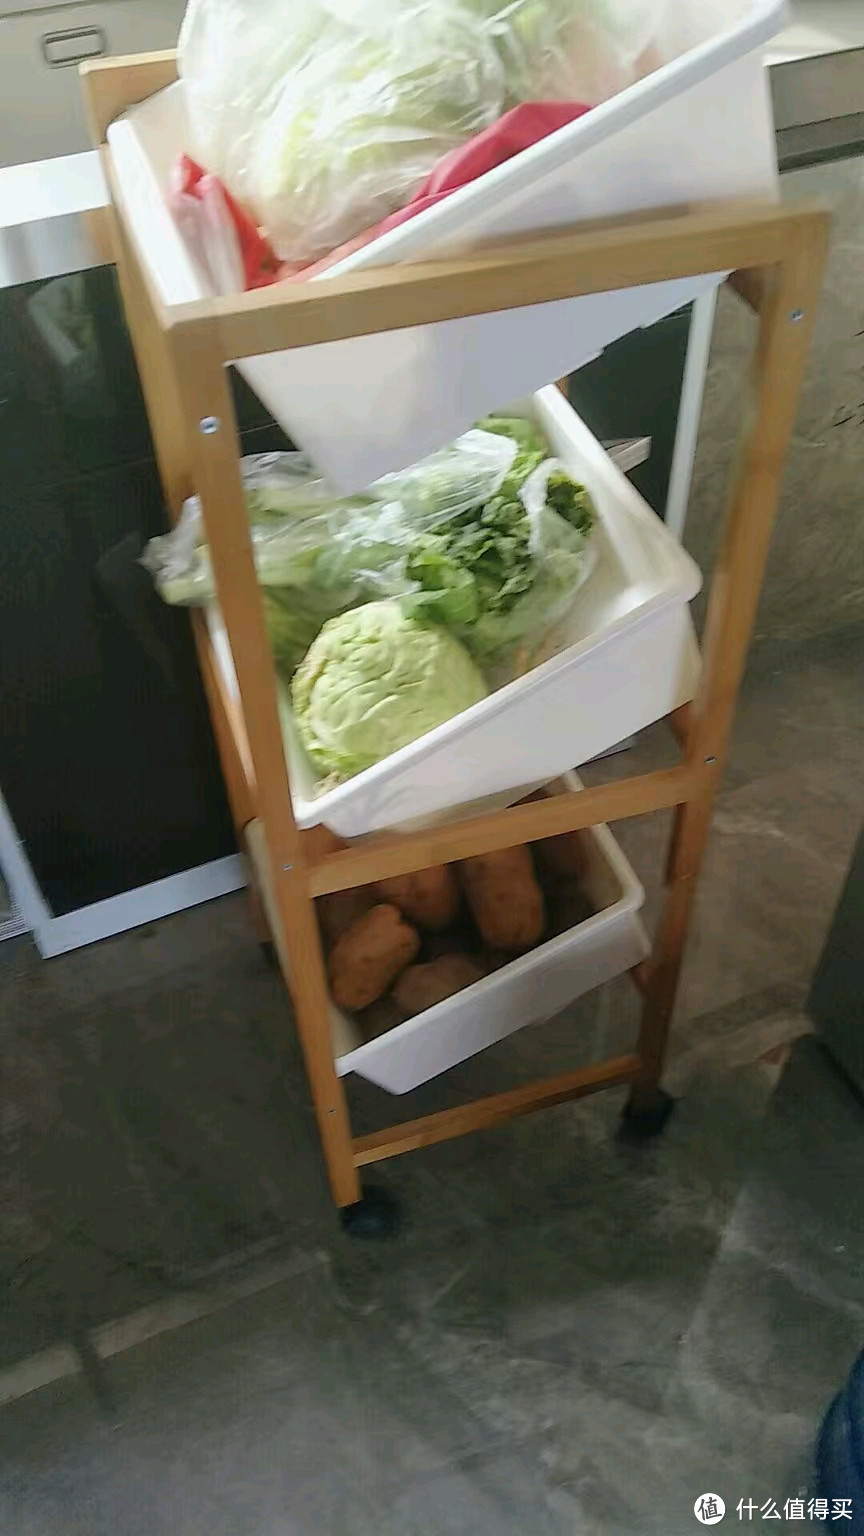 厨房里面用来放蔬菜的塑料托盘盒子加木头架子